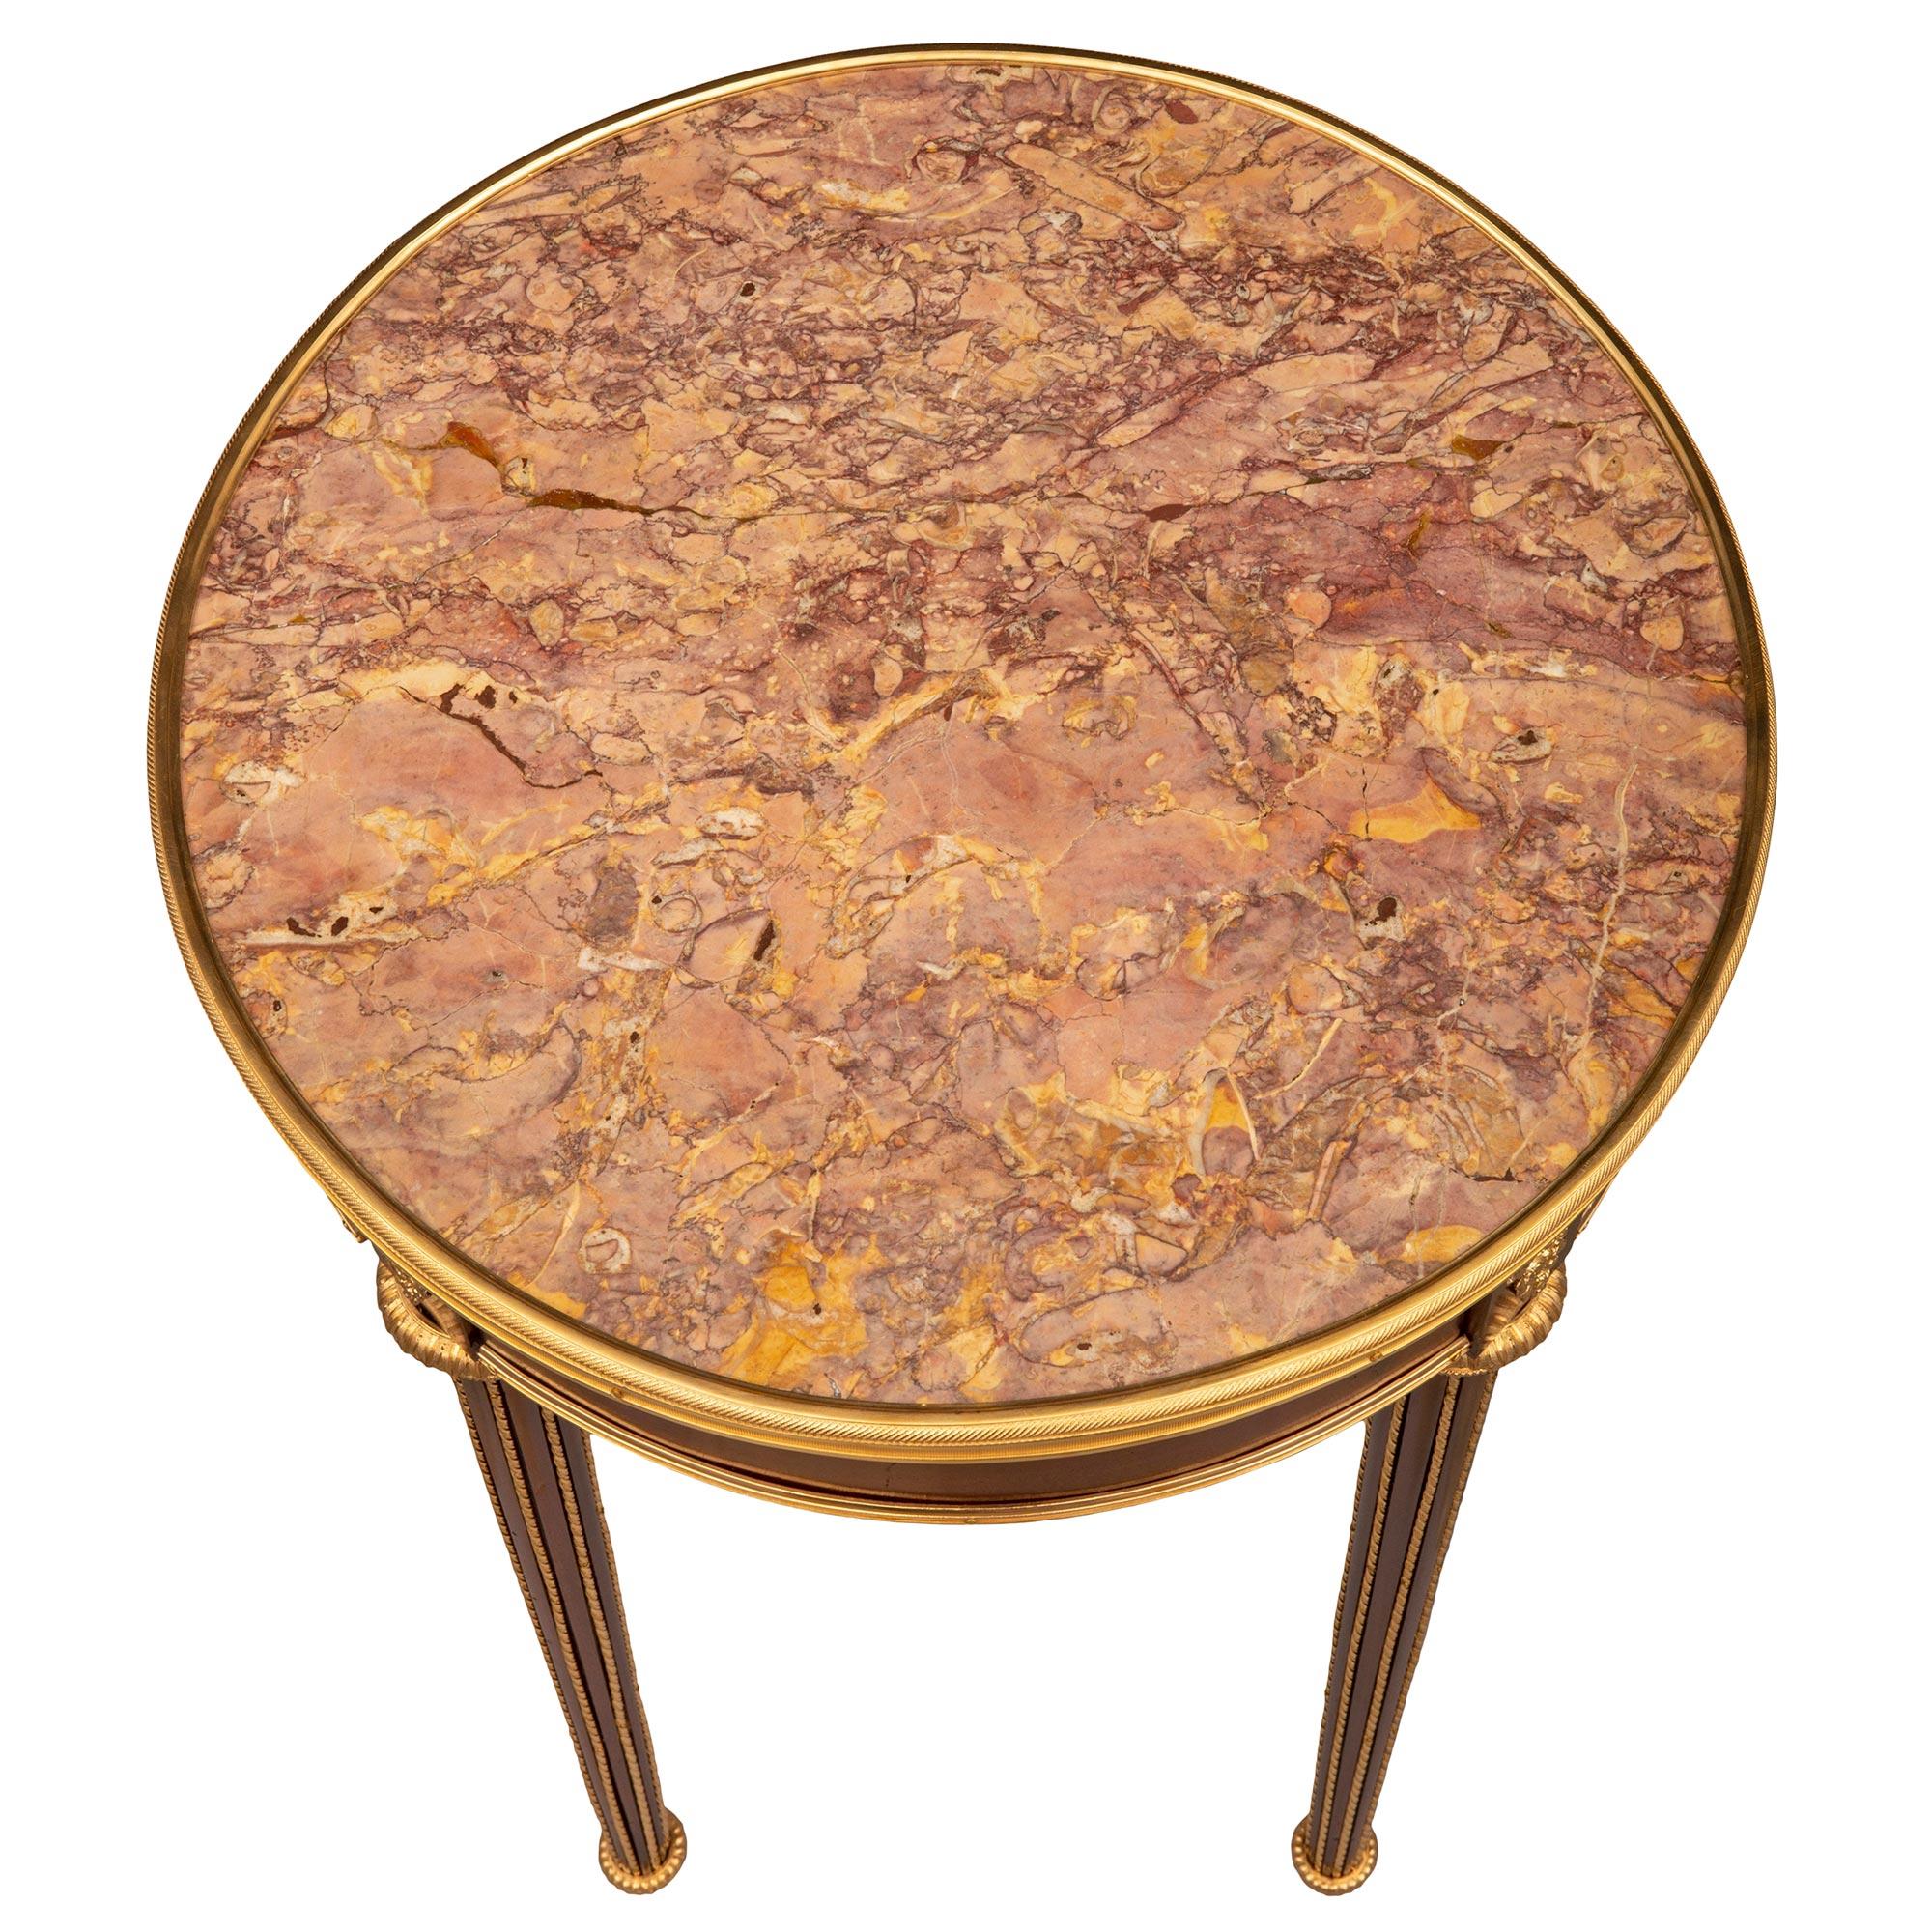 Remarquable table d'appoint circulaire de très grande qualité, de style Louis XVI, en acajou, bronze doré et marbre Brocatelle Violette. La table circulaire est surélevée par d'élégants pieds circulaires effilés avec de fins pieds en forme de topie